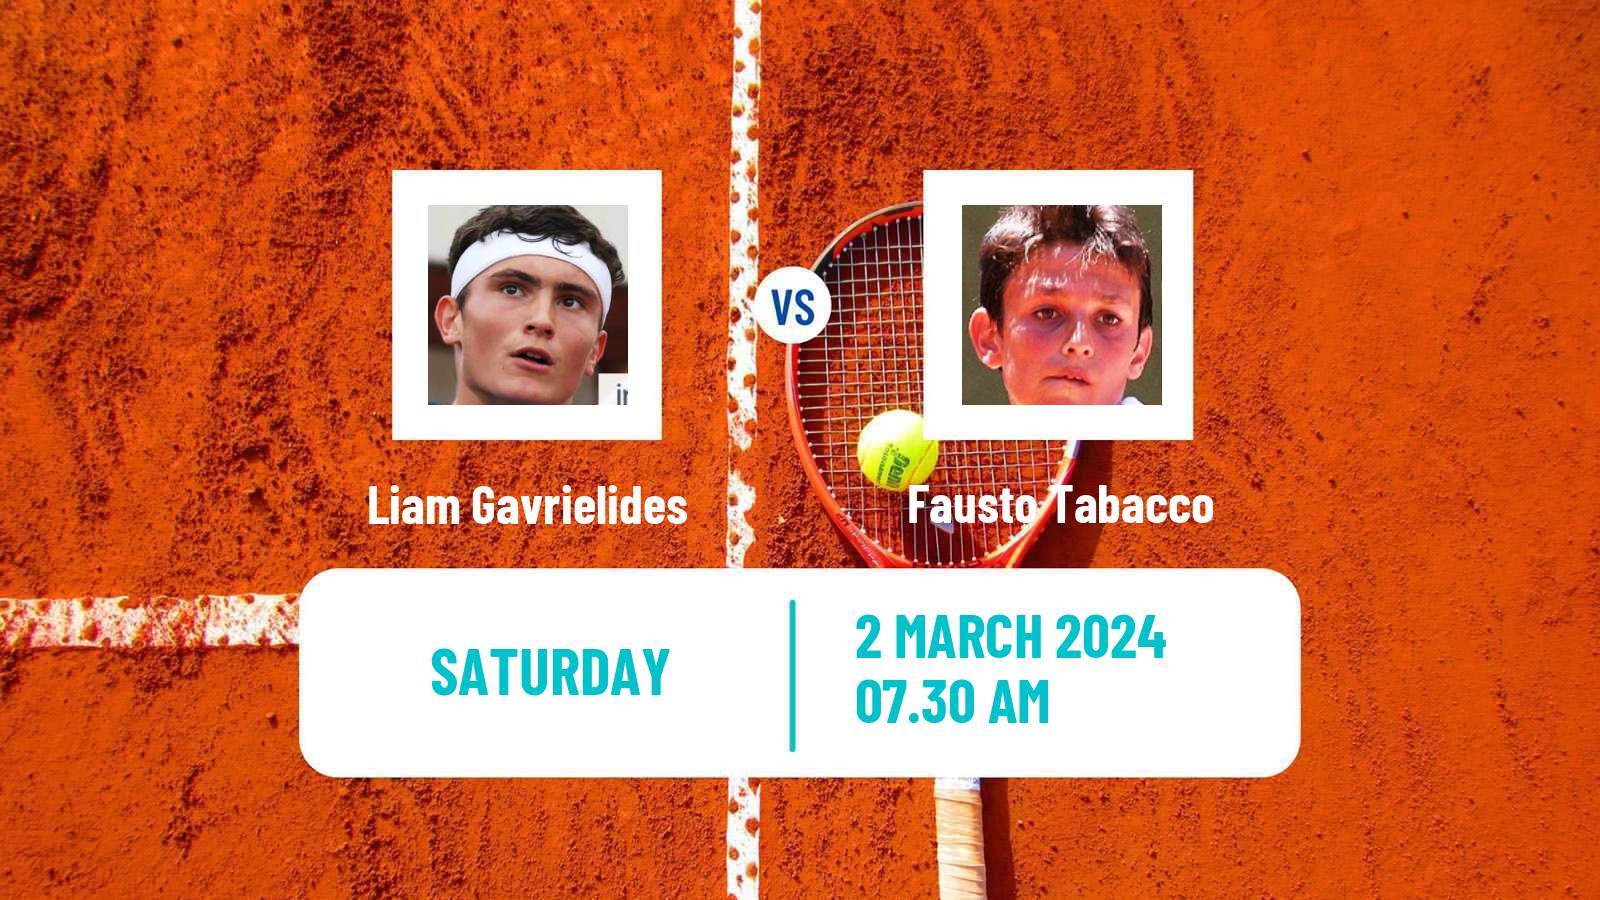 Tennis ITF M15 Villena 2 Men Liam Gavrielides - Fausto Tabacco